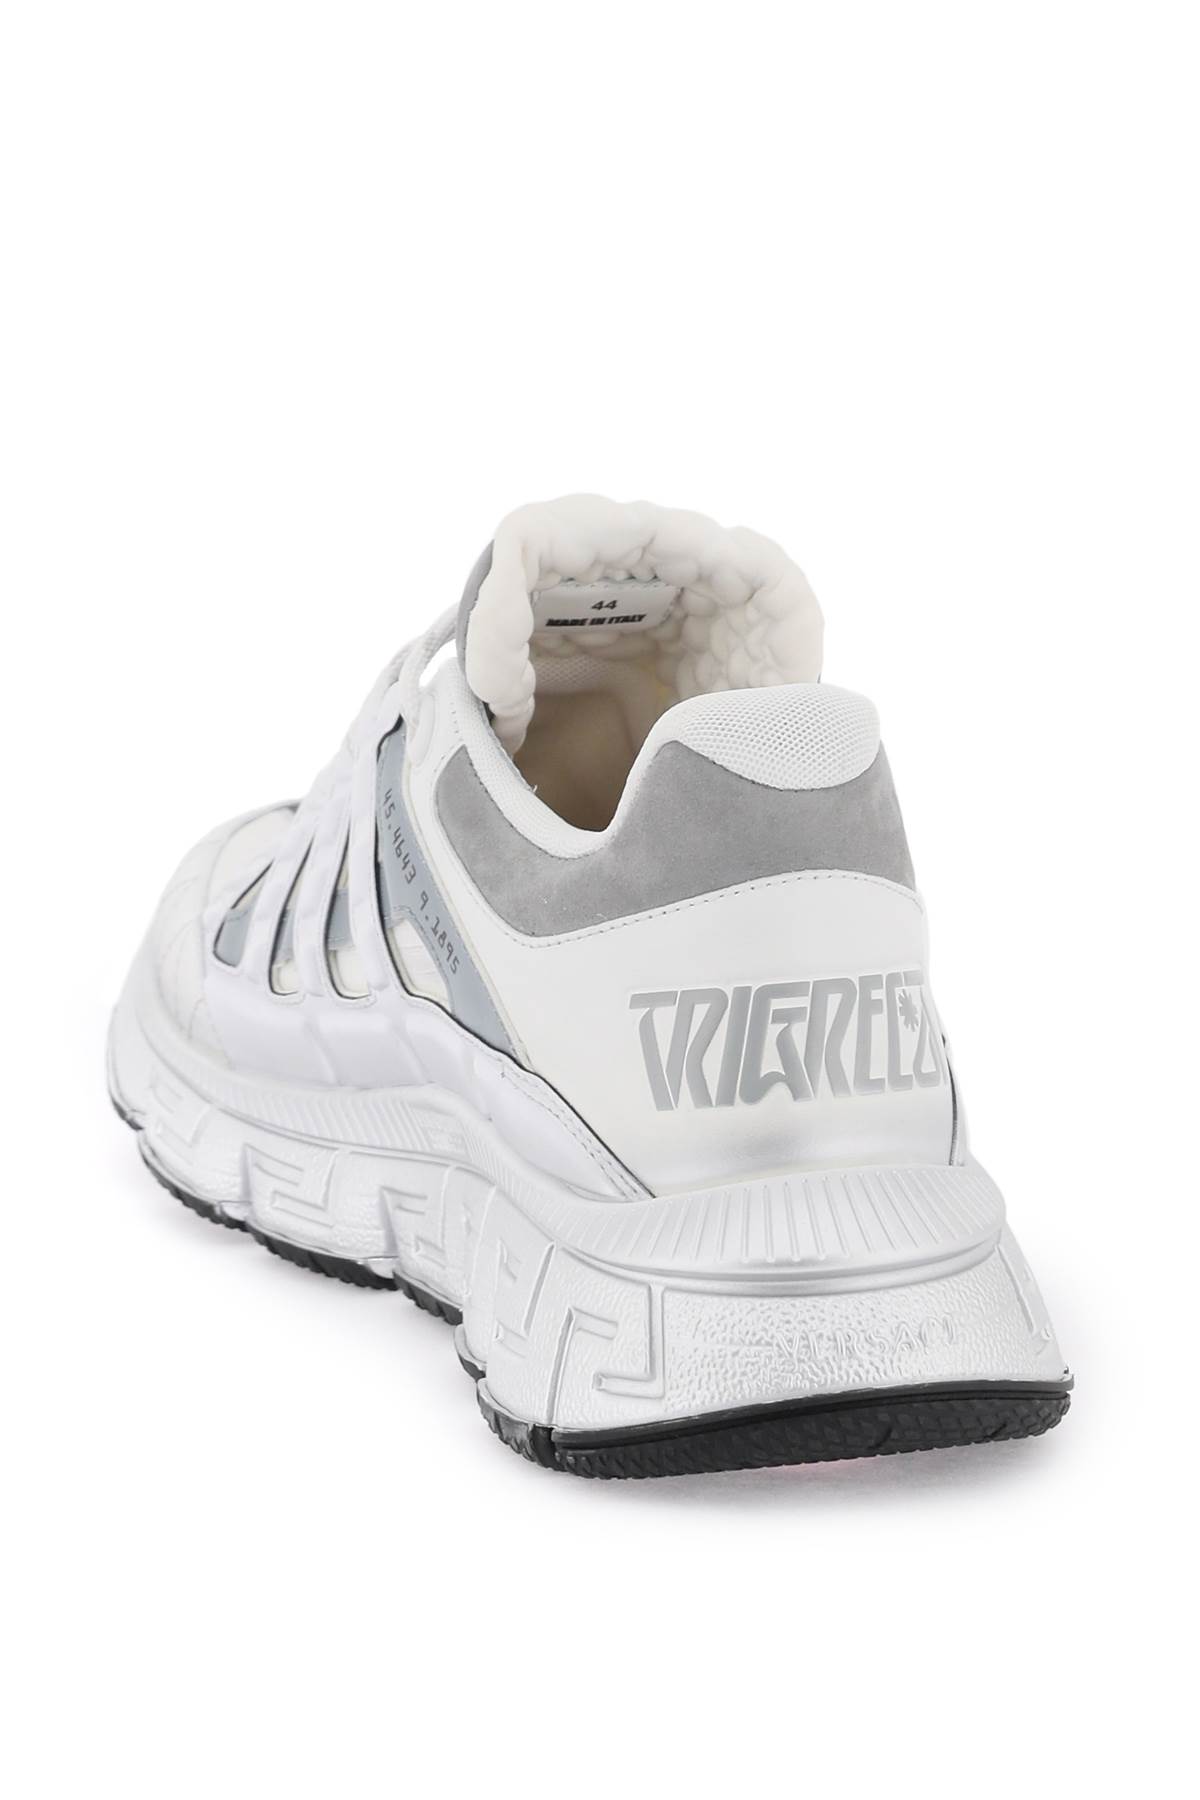 Shop Versace Trigreca Sneakers In Bianco/argento